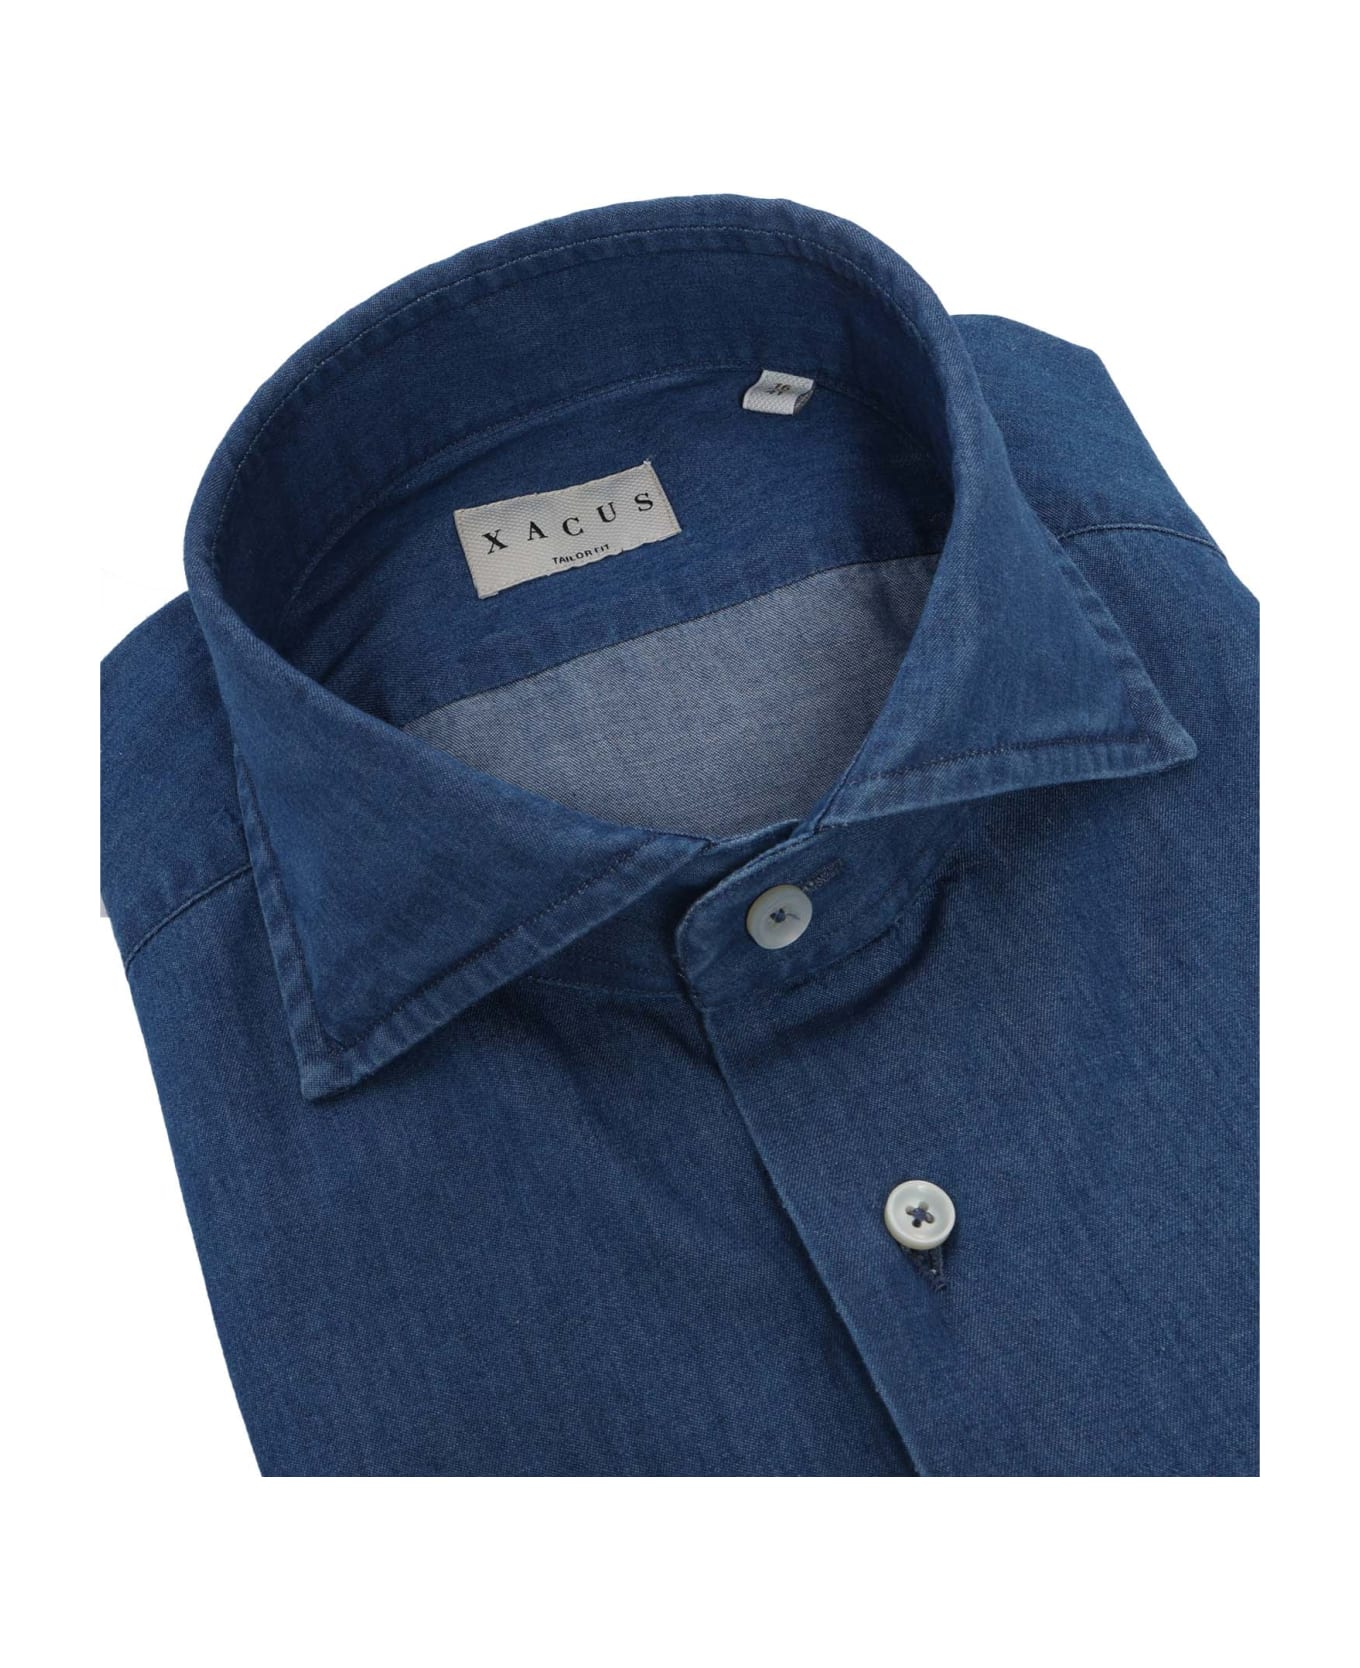 Xacus Blue Cotton Shirt - MULTICOLOR